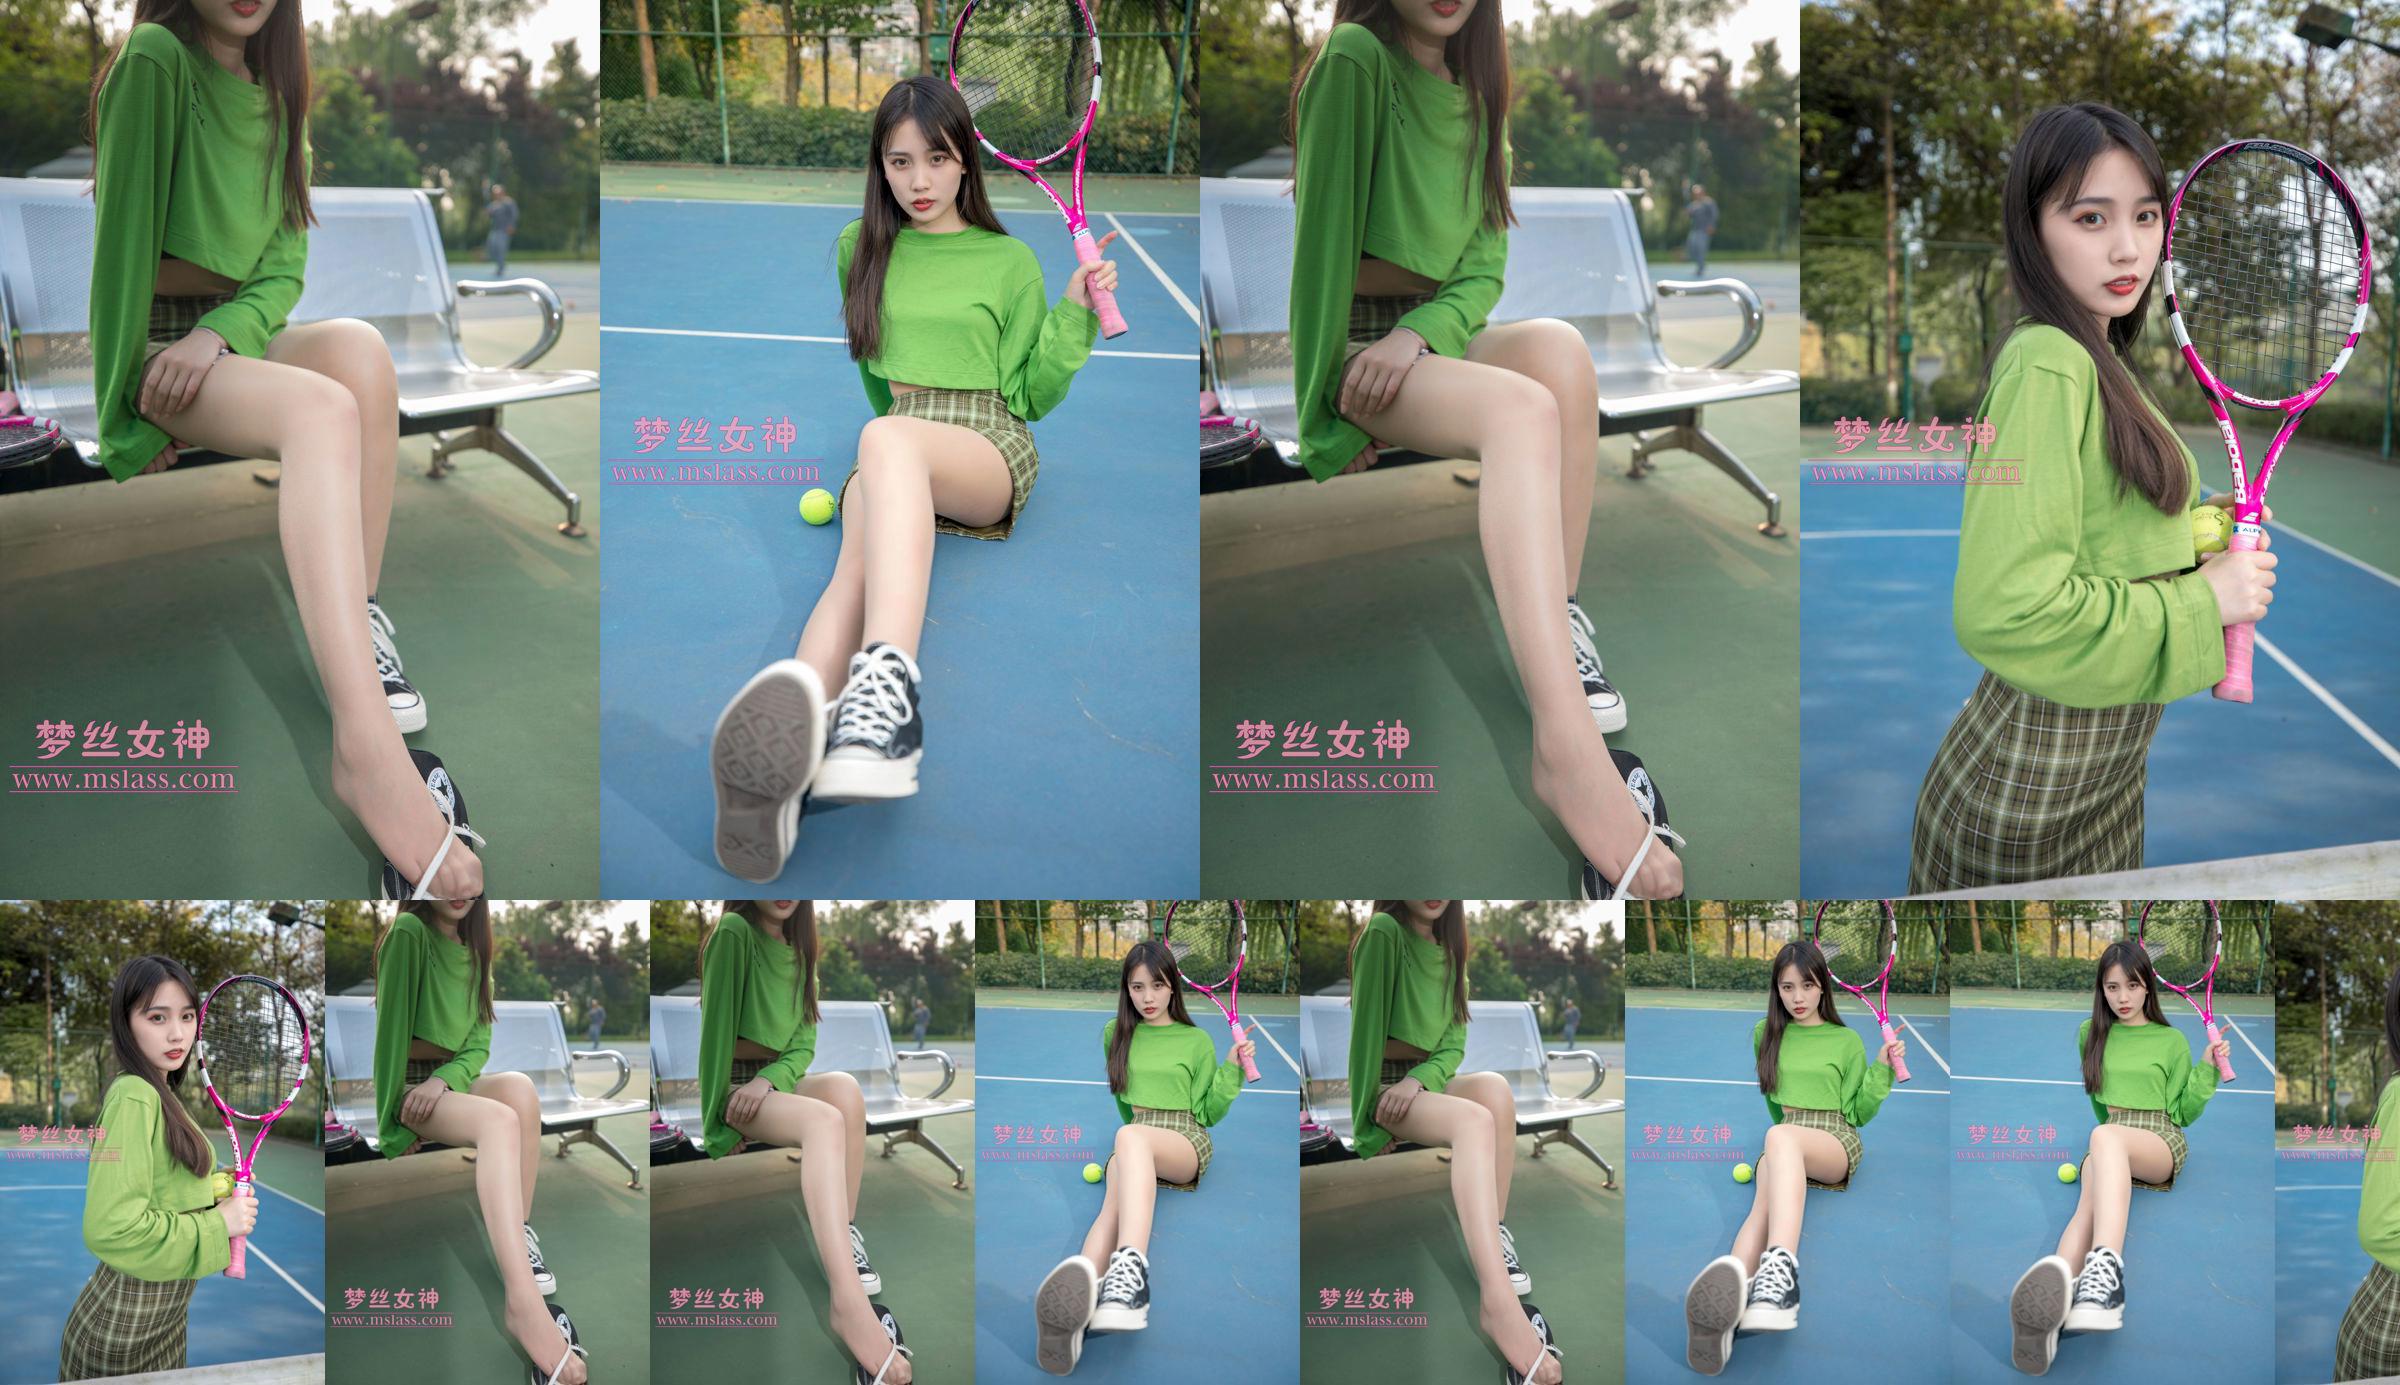 [Deusa dos Sonhos MSLASS] Xiang Xuan Tennis Girl No.ebb83c Página 6